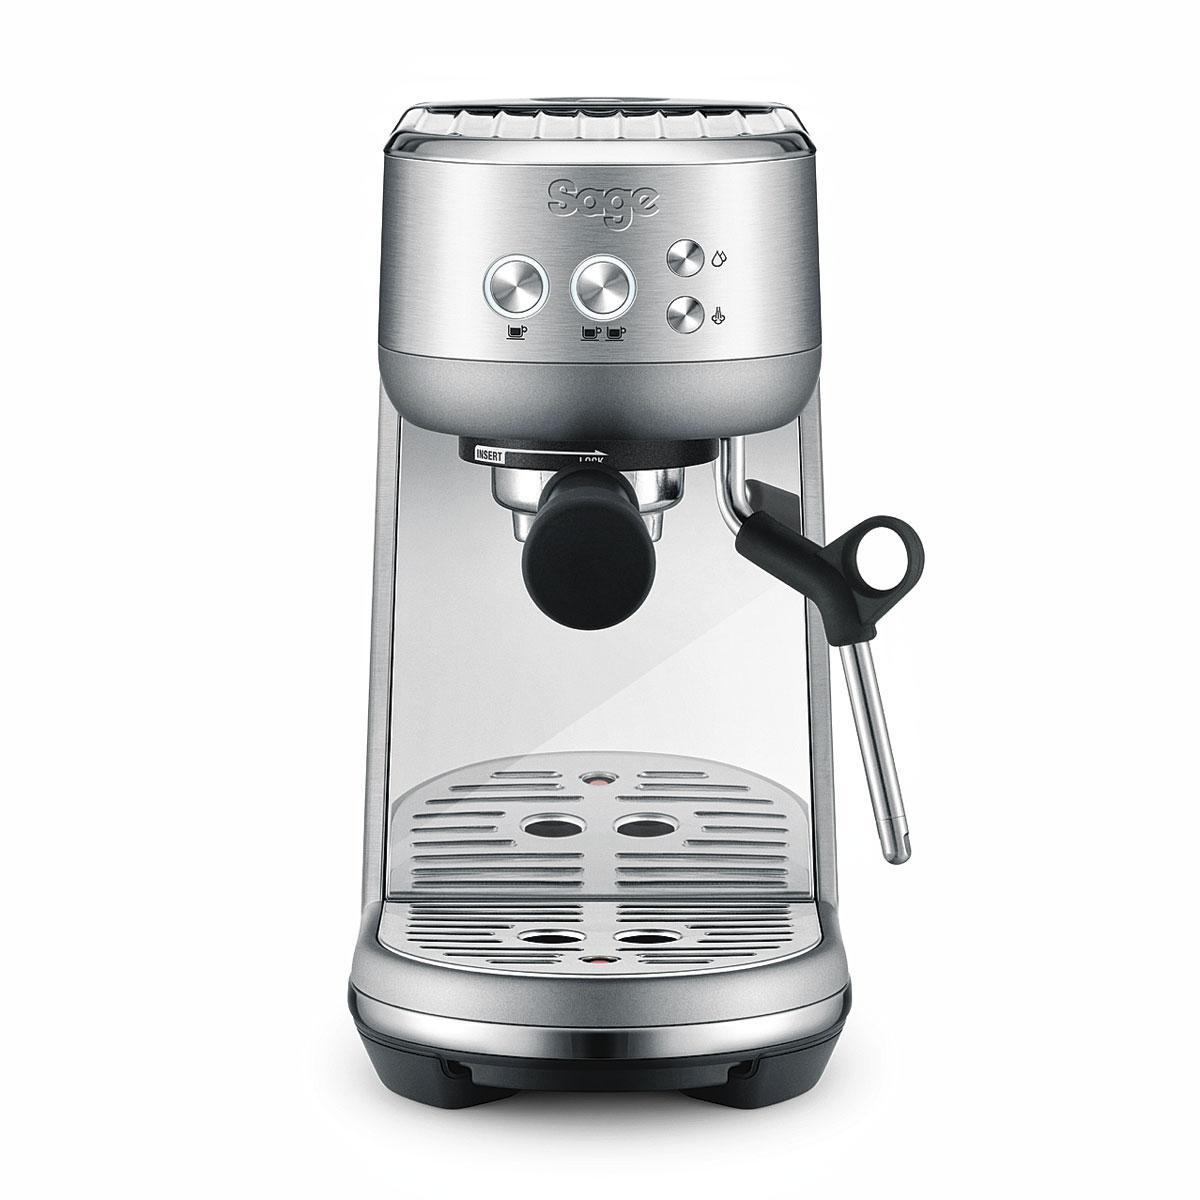 Une machine à expresso Bambino pour faire du café à la maison comme un barista professionnel, 